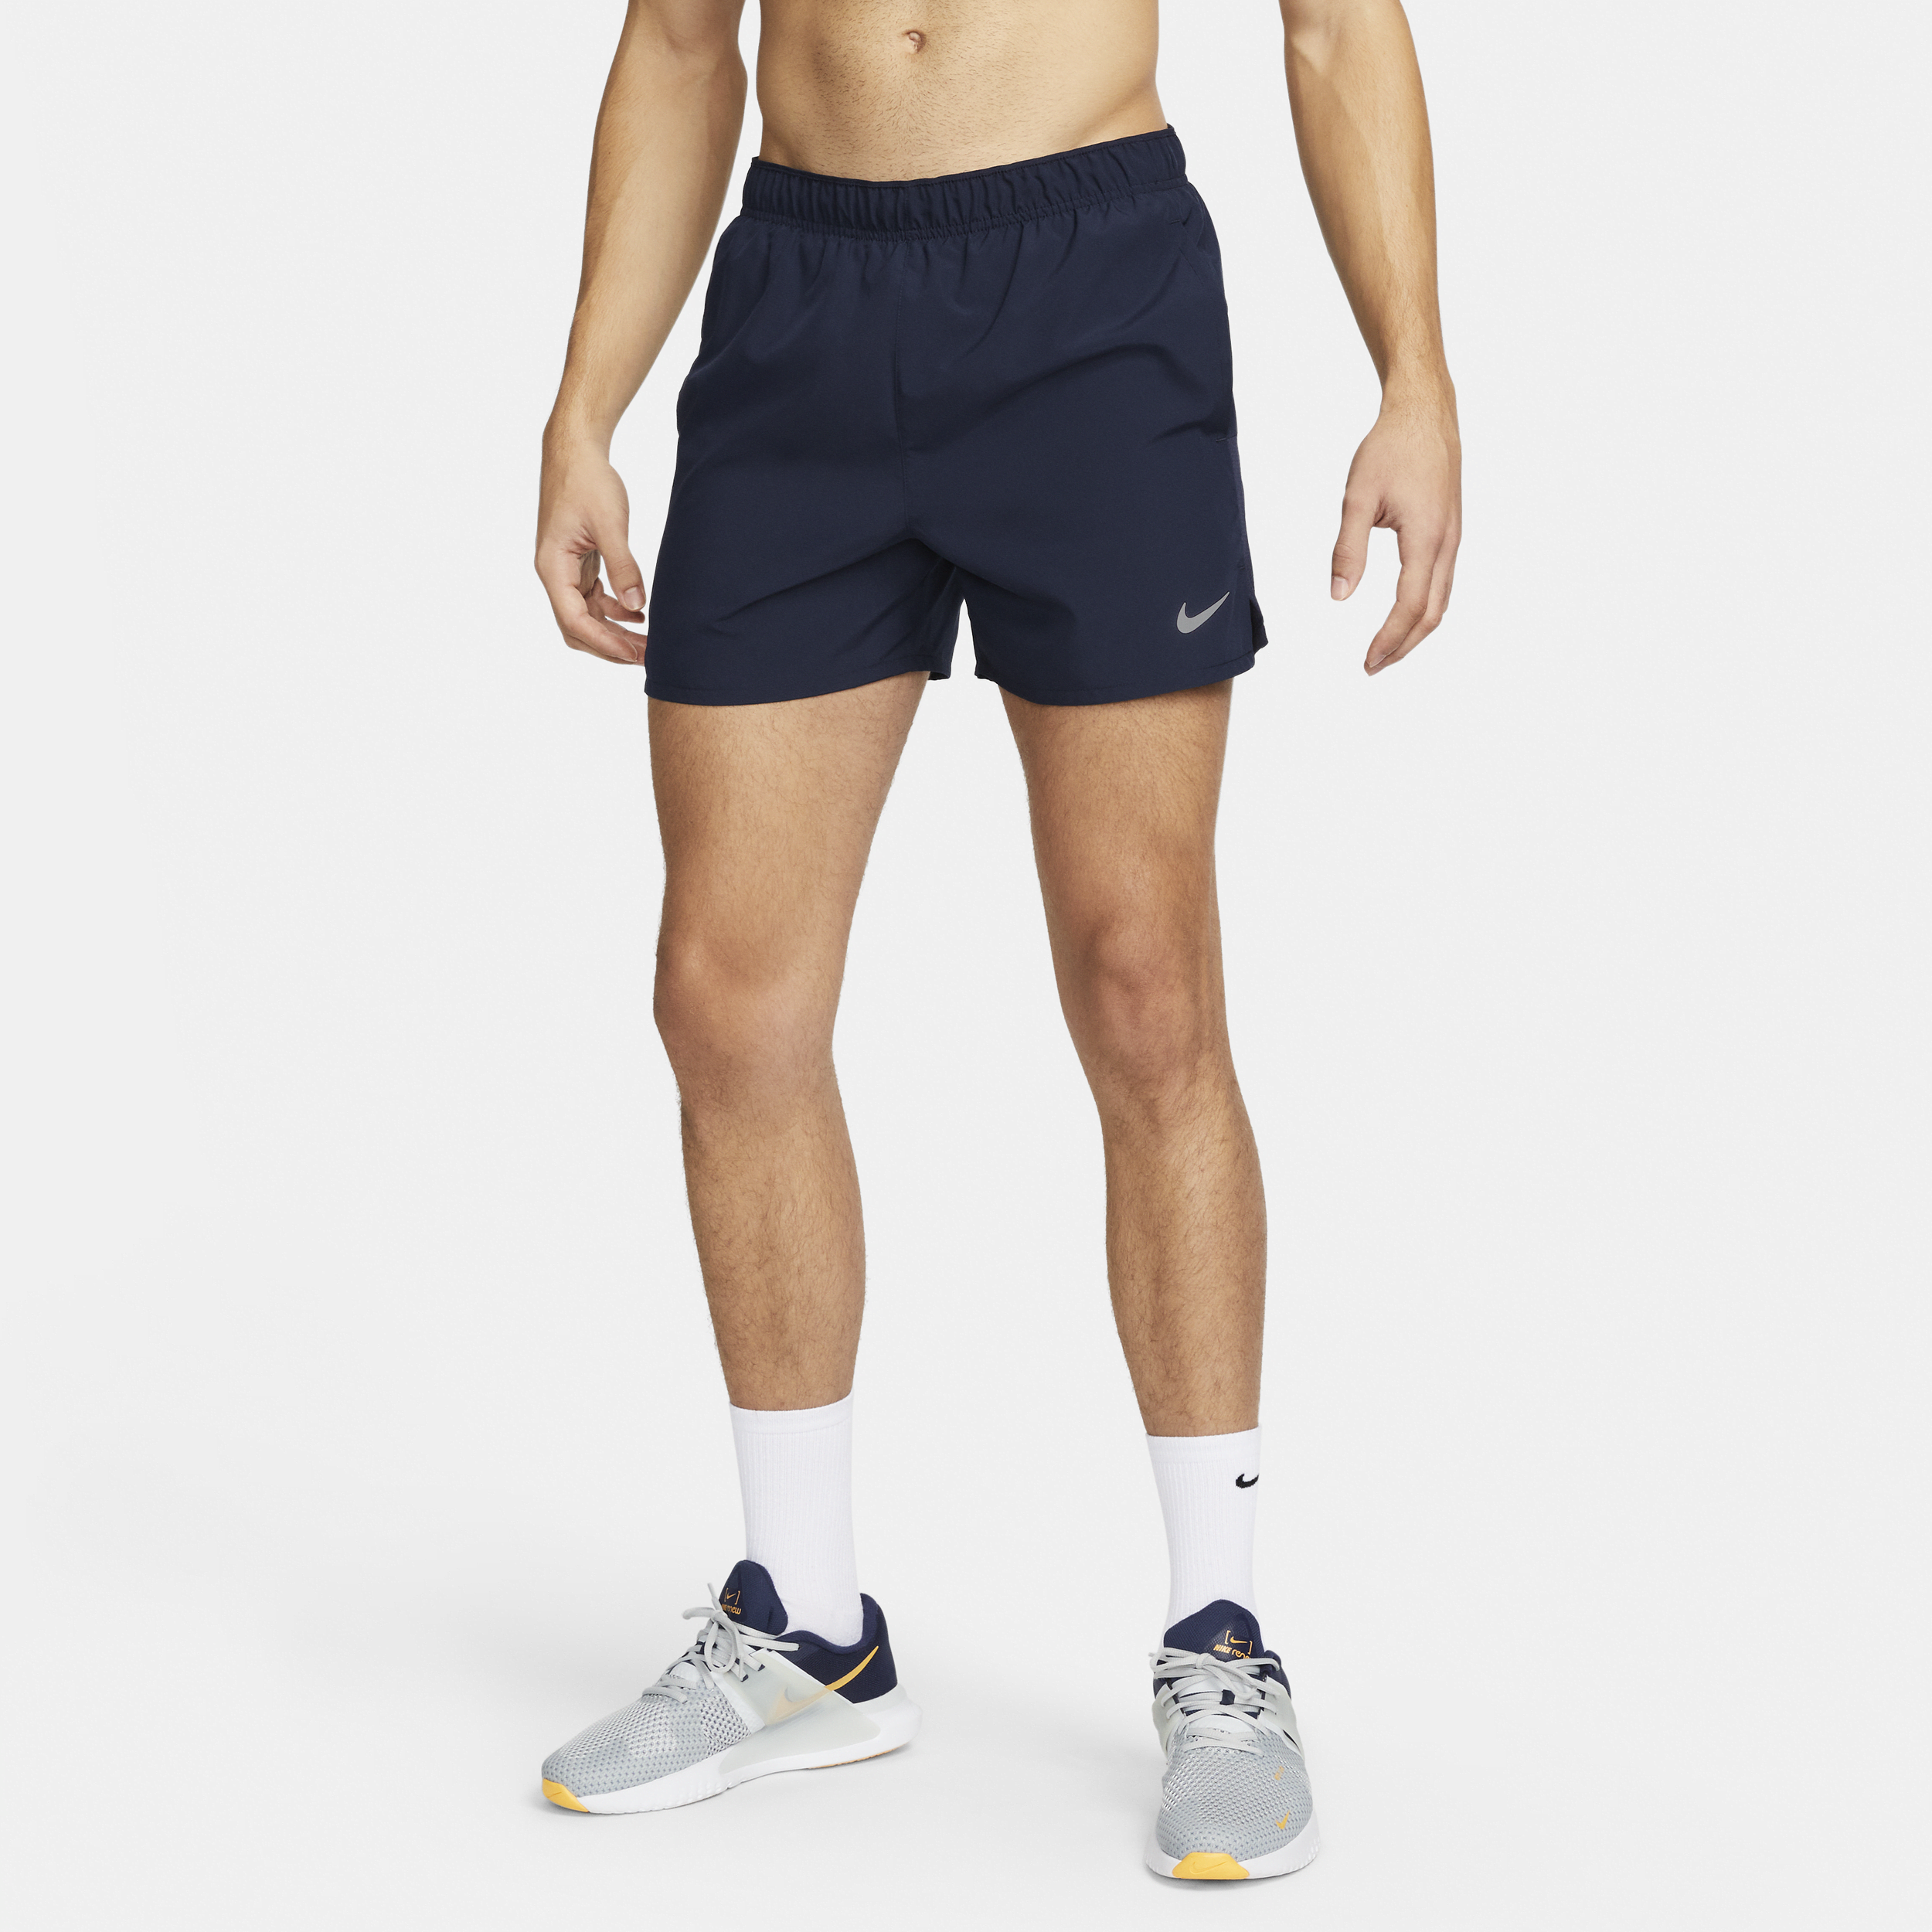 Nike Challenger Dri-FIT hardloopshorts met binnenbroek voor heren (13 cm) - Blauw